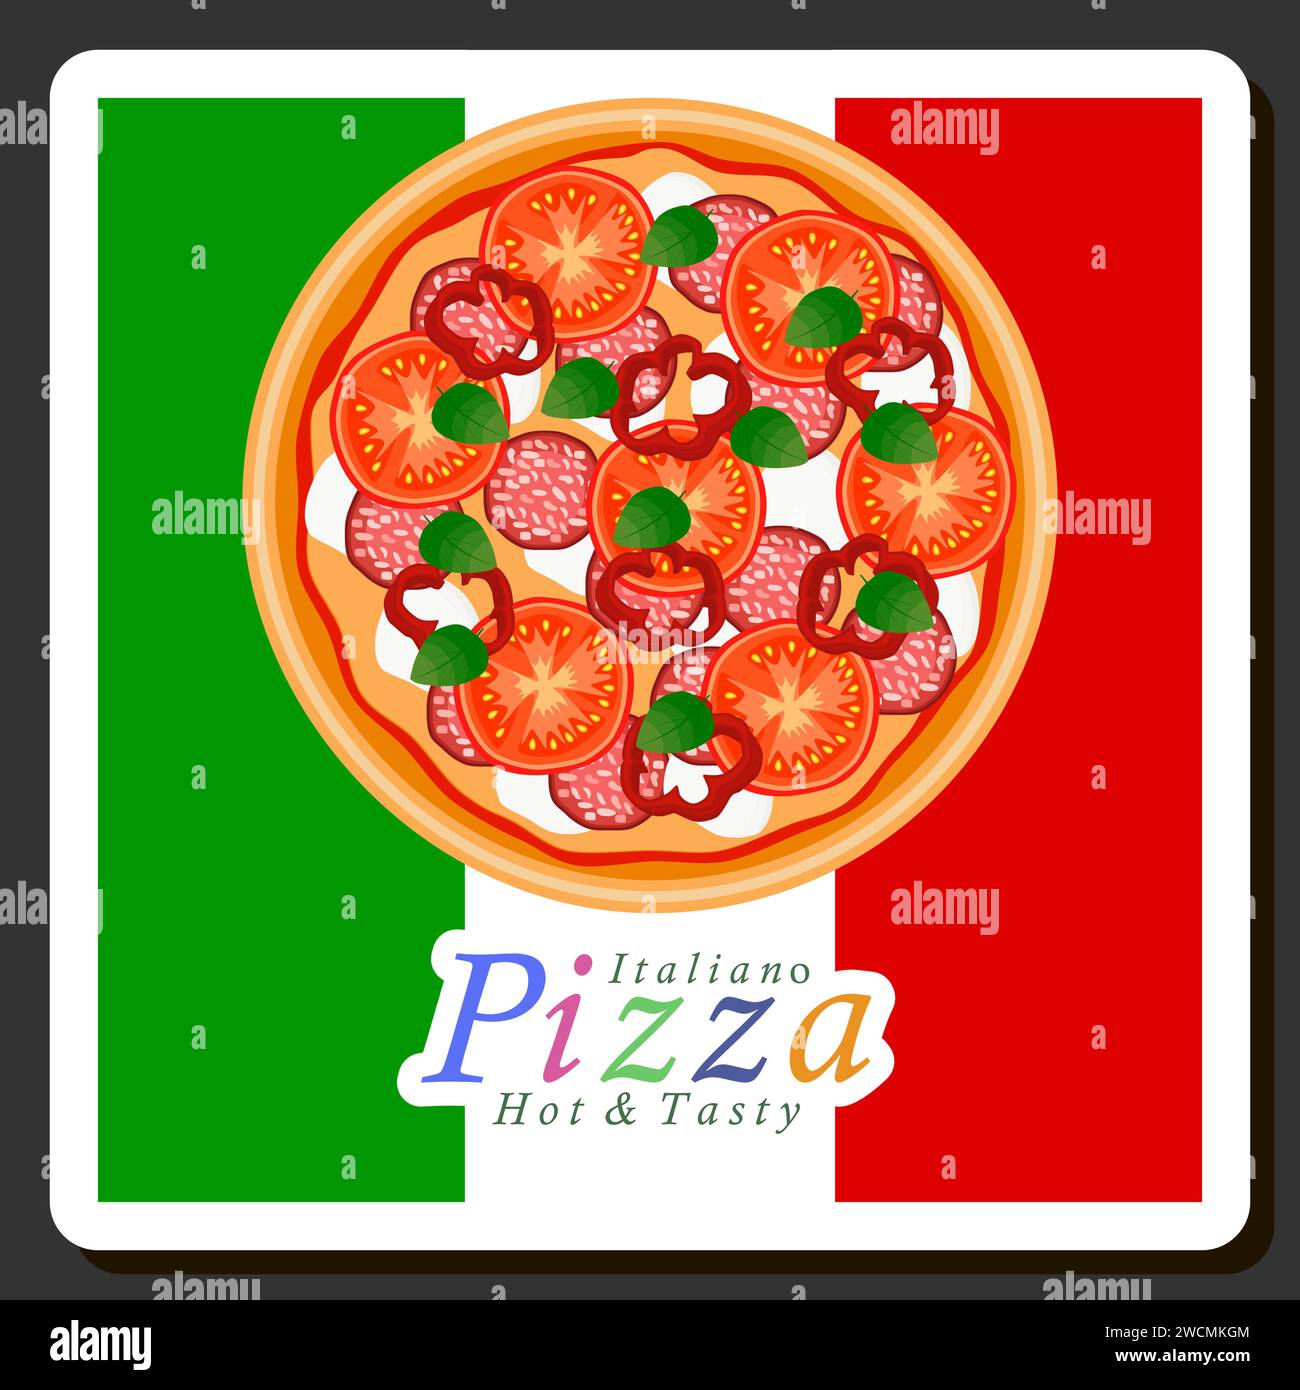 Illustrazione del menu a tema della grande pizza calda e gustosa, pizza italiana composta da vari ingredienti come impasto croccante al forno, pomodoro rosso, GE Illustrazione Vettoriale